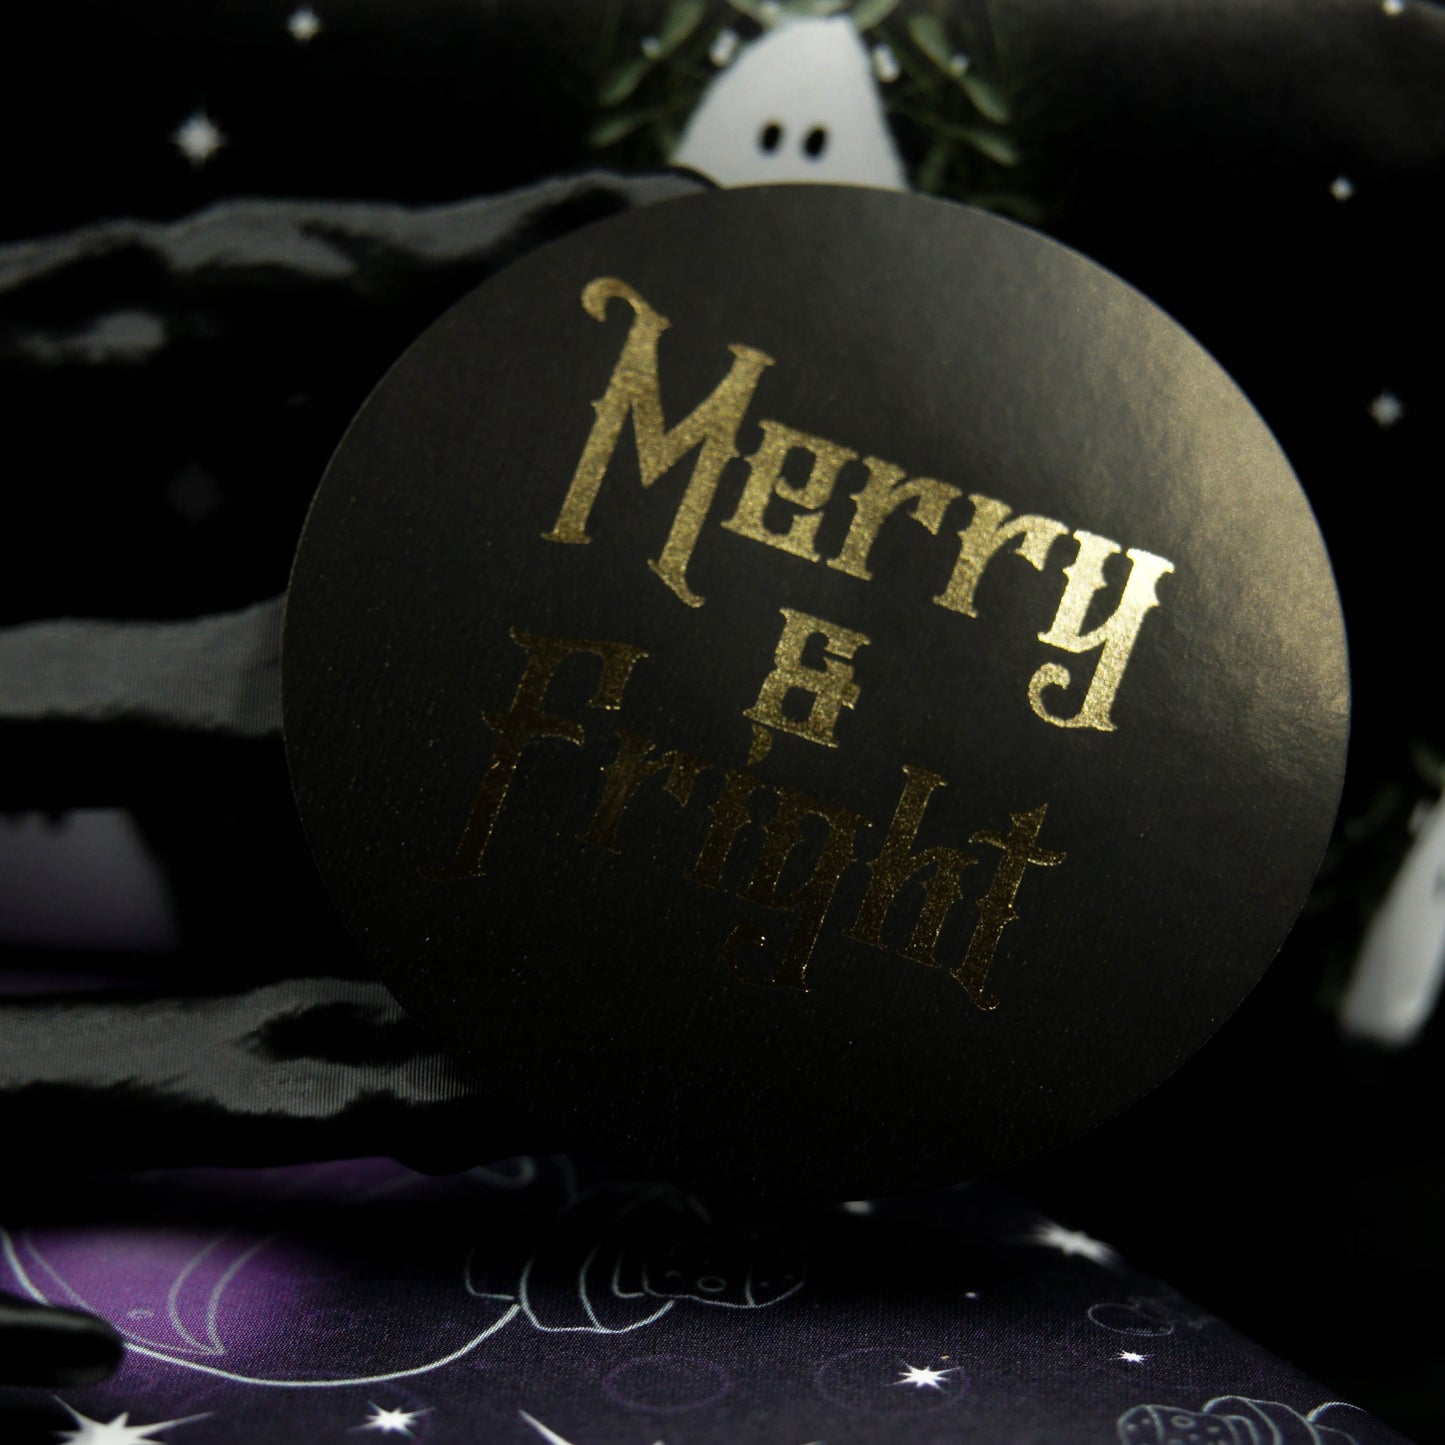 Pegatinas navideñas góticas de Merry &amp; Fright | Elegantemente gótico